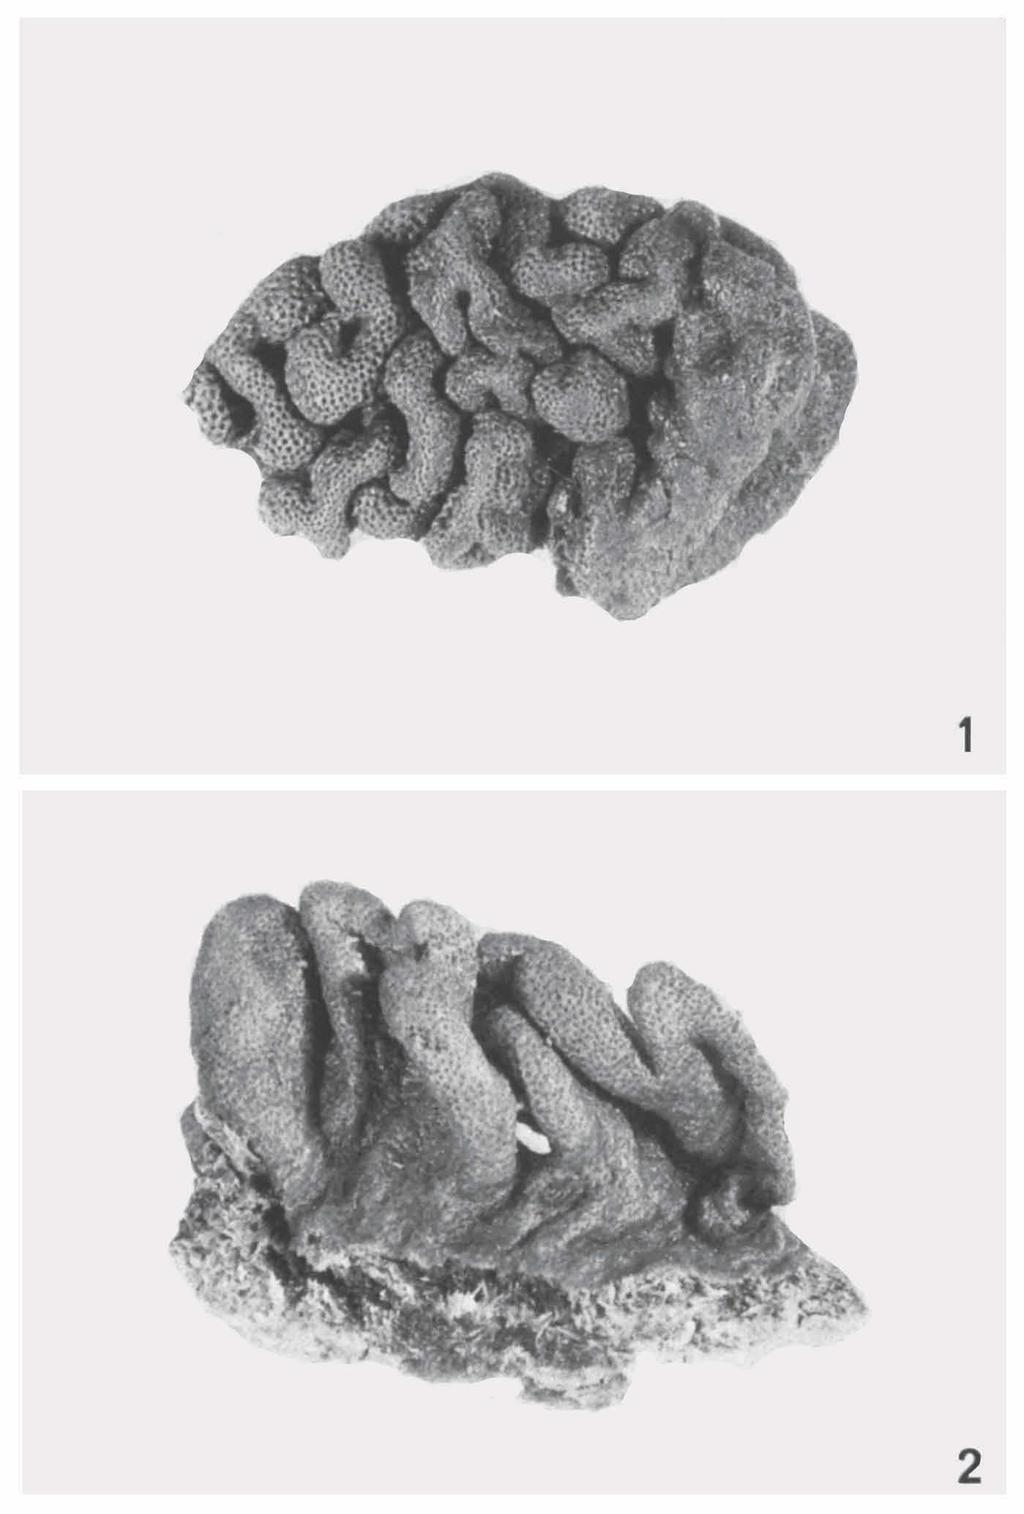 ZOOLOGISCHE V E R H A N D E L I N G E N 150 (1977) PL. 6 Fig. I. Sinularia gyrosa (Klunzinger), BPBM D497.